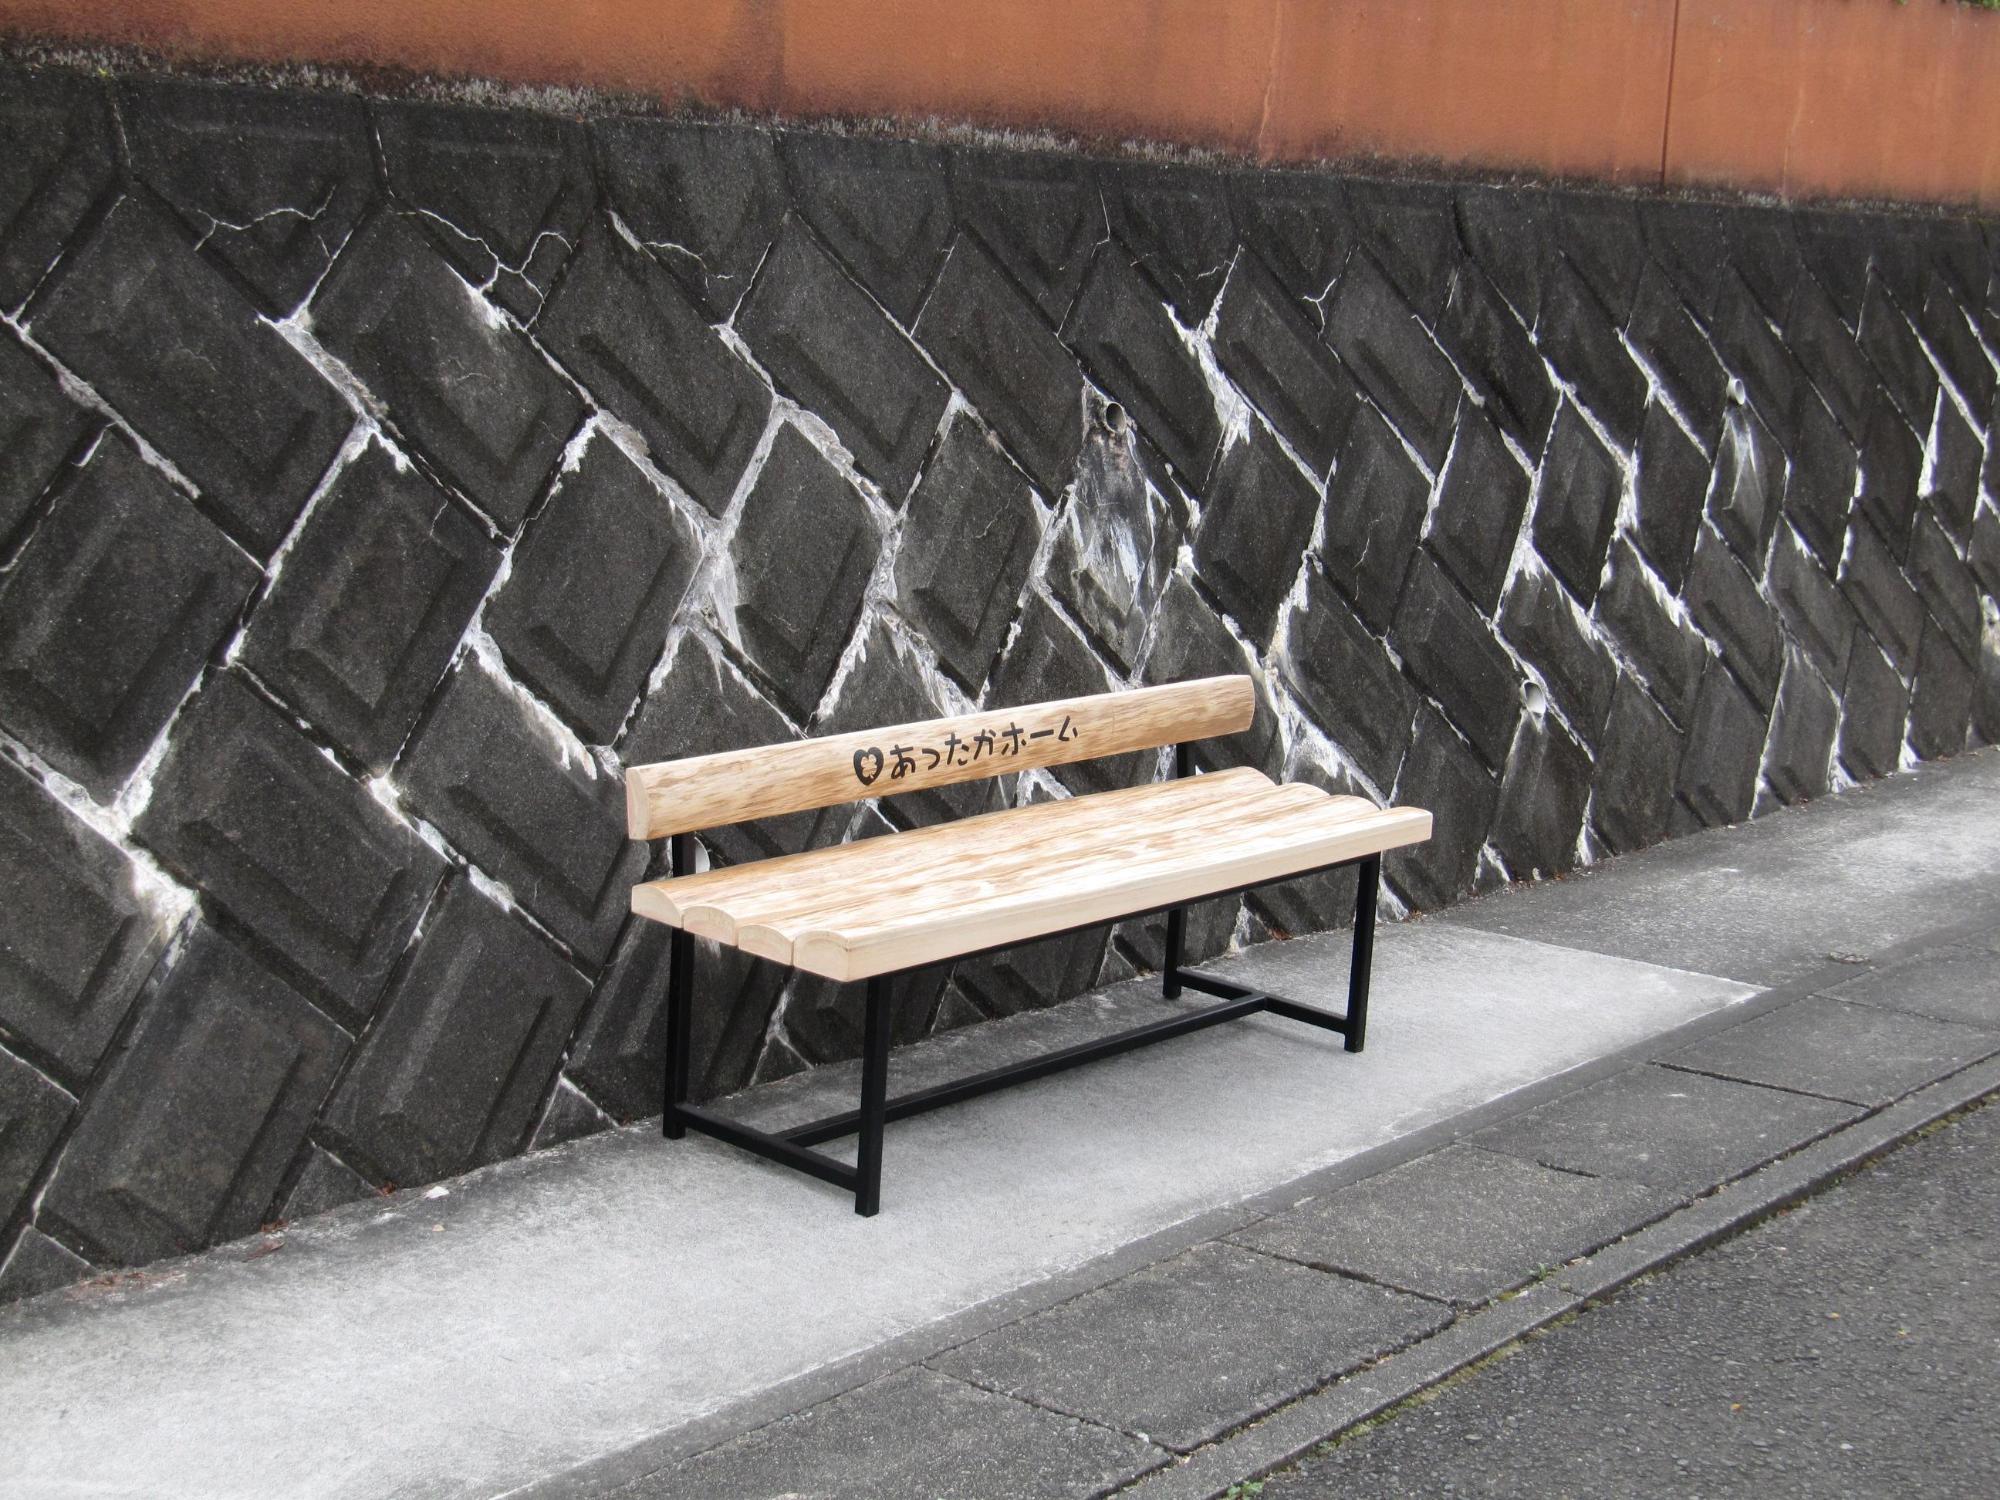 木製のベンチの背もたれに「あったかホーム」と文字の入ったベンチが道路脇に設置されている写真